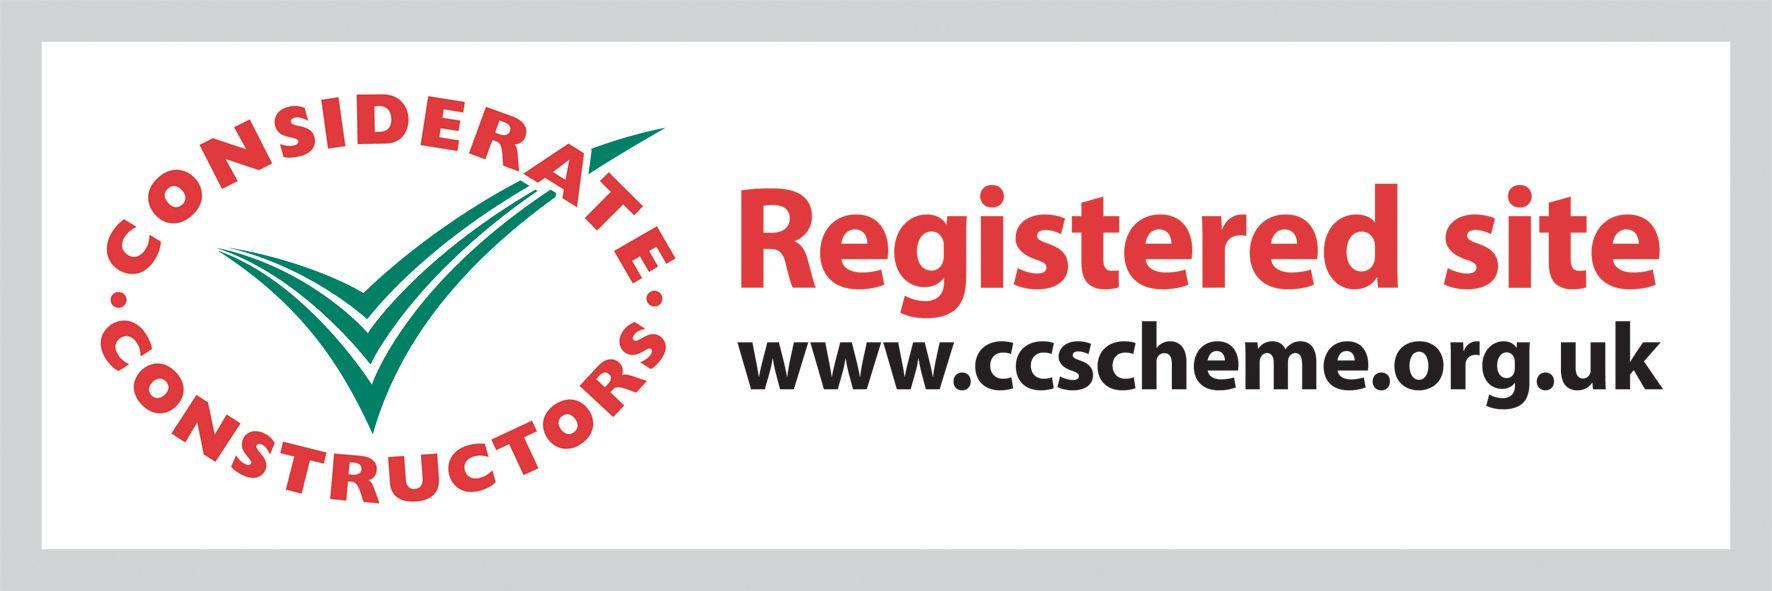 Registered Logo - Registered site logo